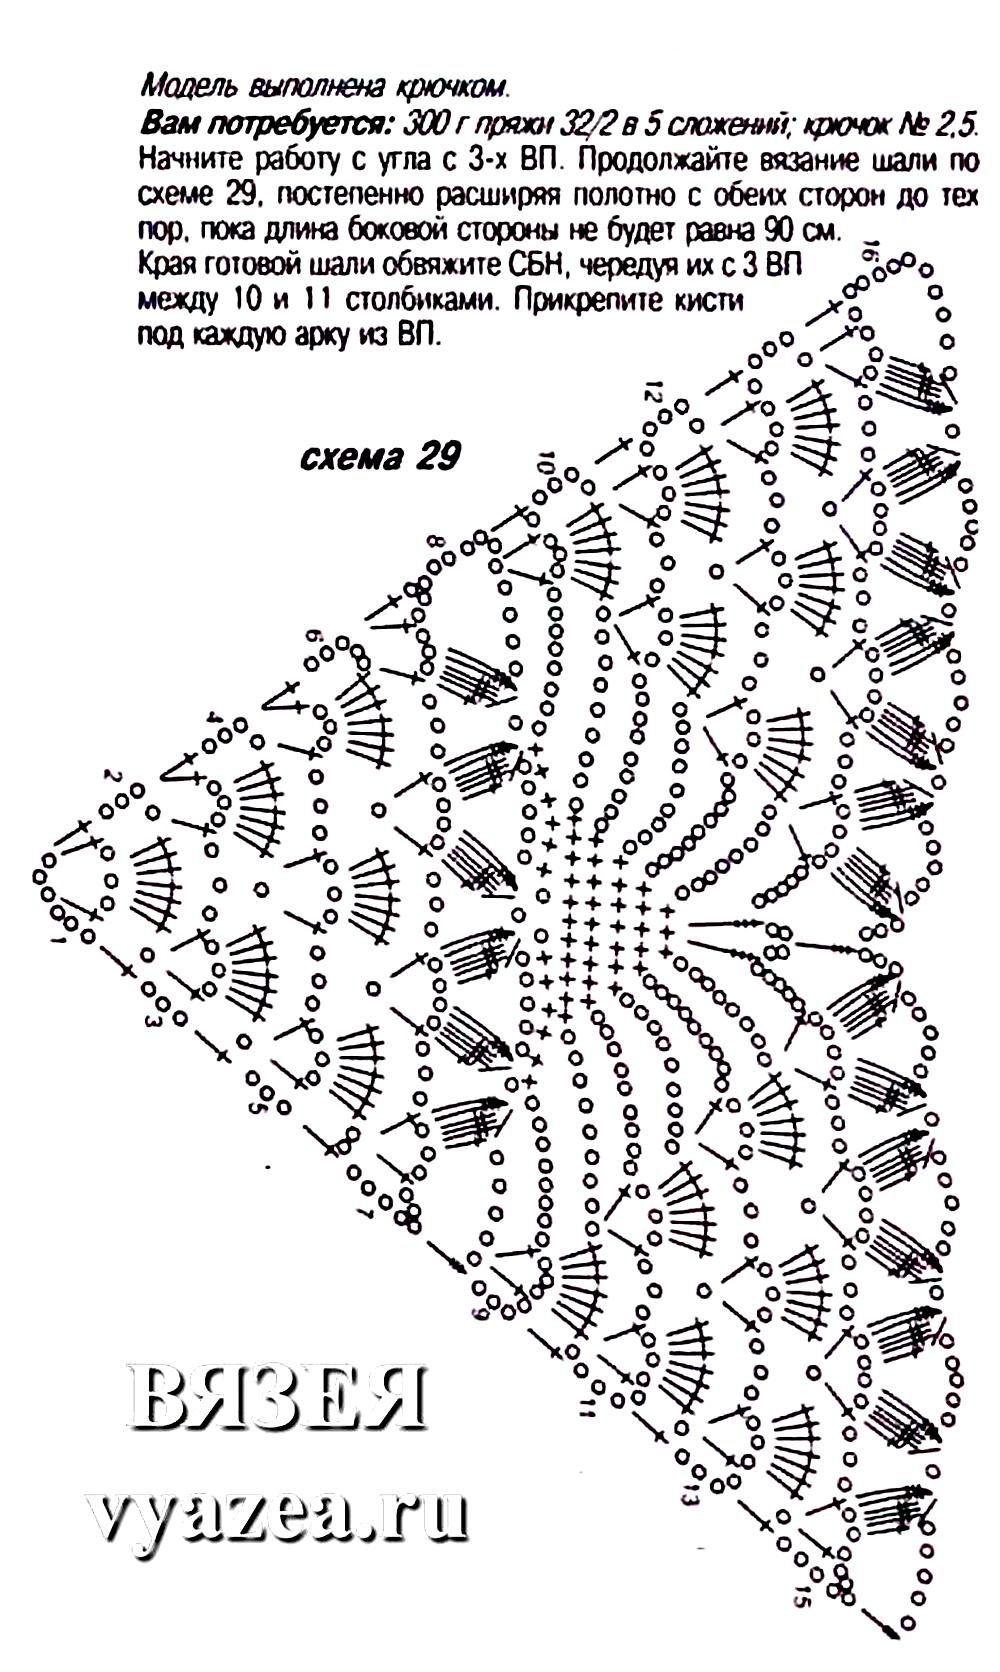 Простые вязанные шали. Шаль Crochet Shawl схема. Вязаные крючком косынки шали схемы. Шаль вязаная крючком узором паучки. Как связать шаль крючком схема.